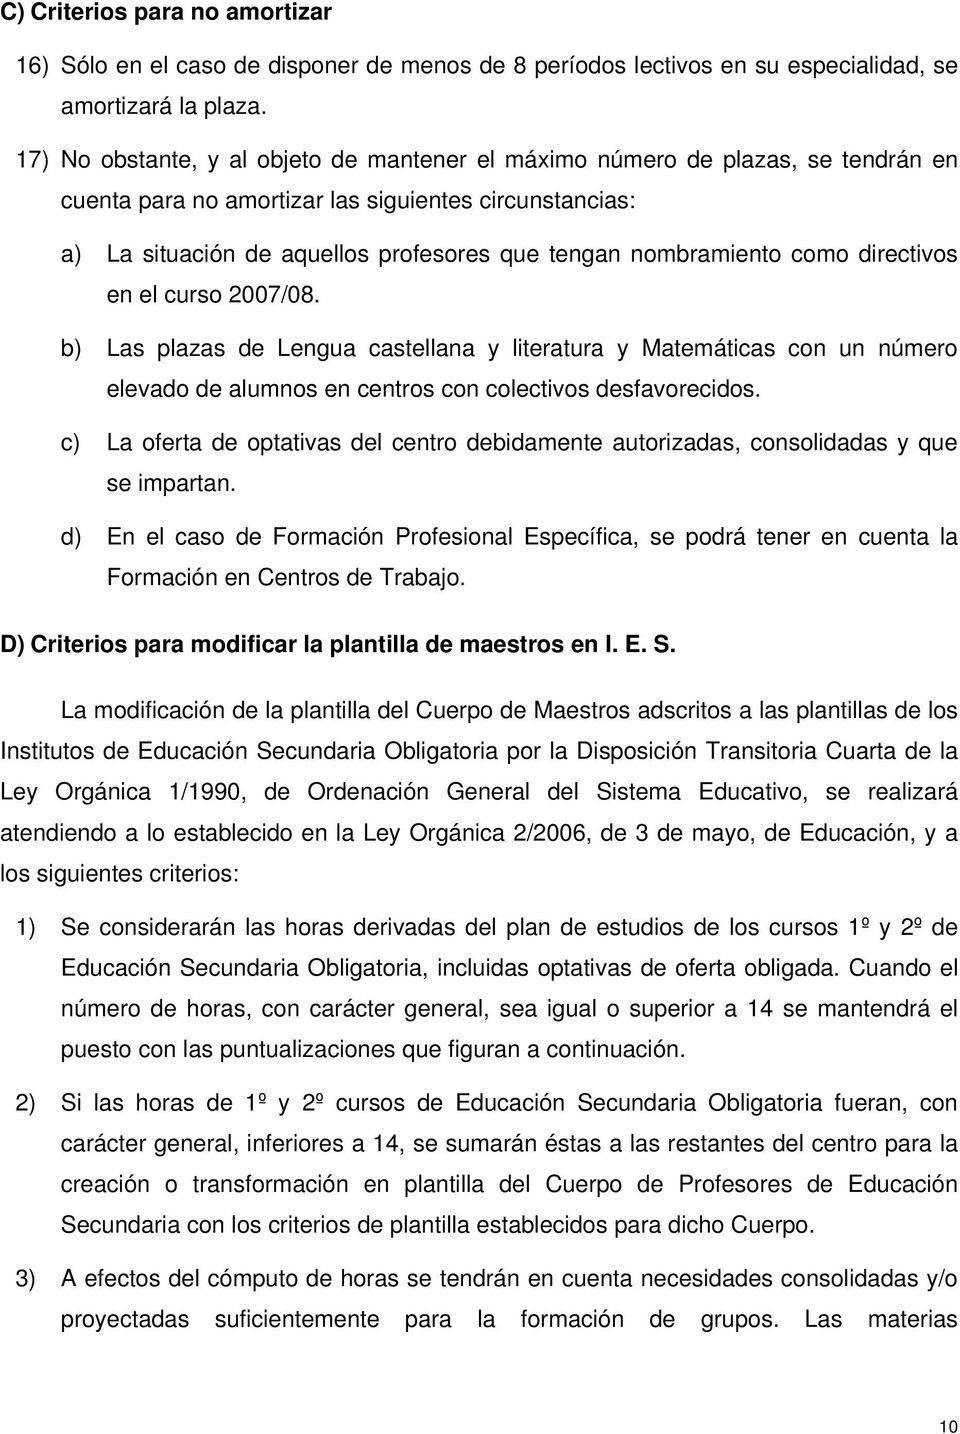 nombramiento como directivos en el curso 2007/08. b) Las plazas de Lengua castellana y literatura y Matemáticas con un número elevado de alumnos en centros con colectivos desfavorecidos.